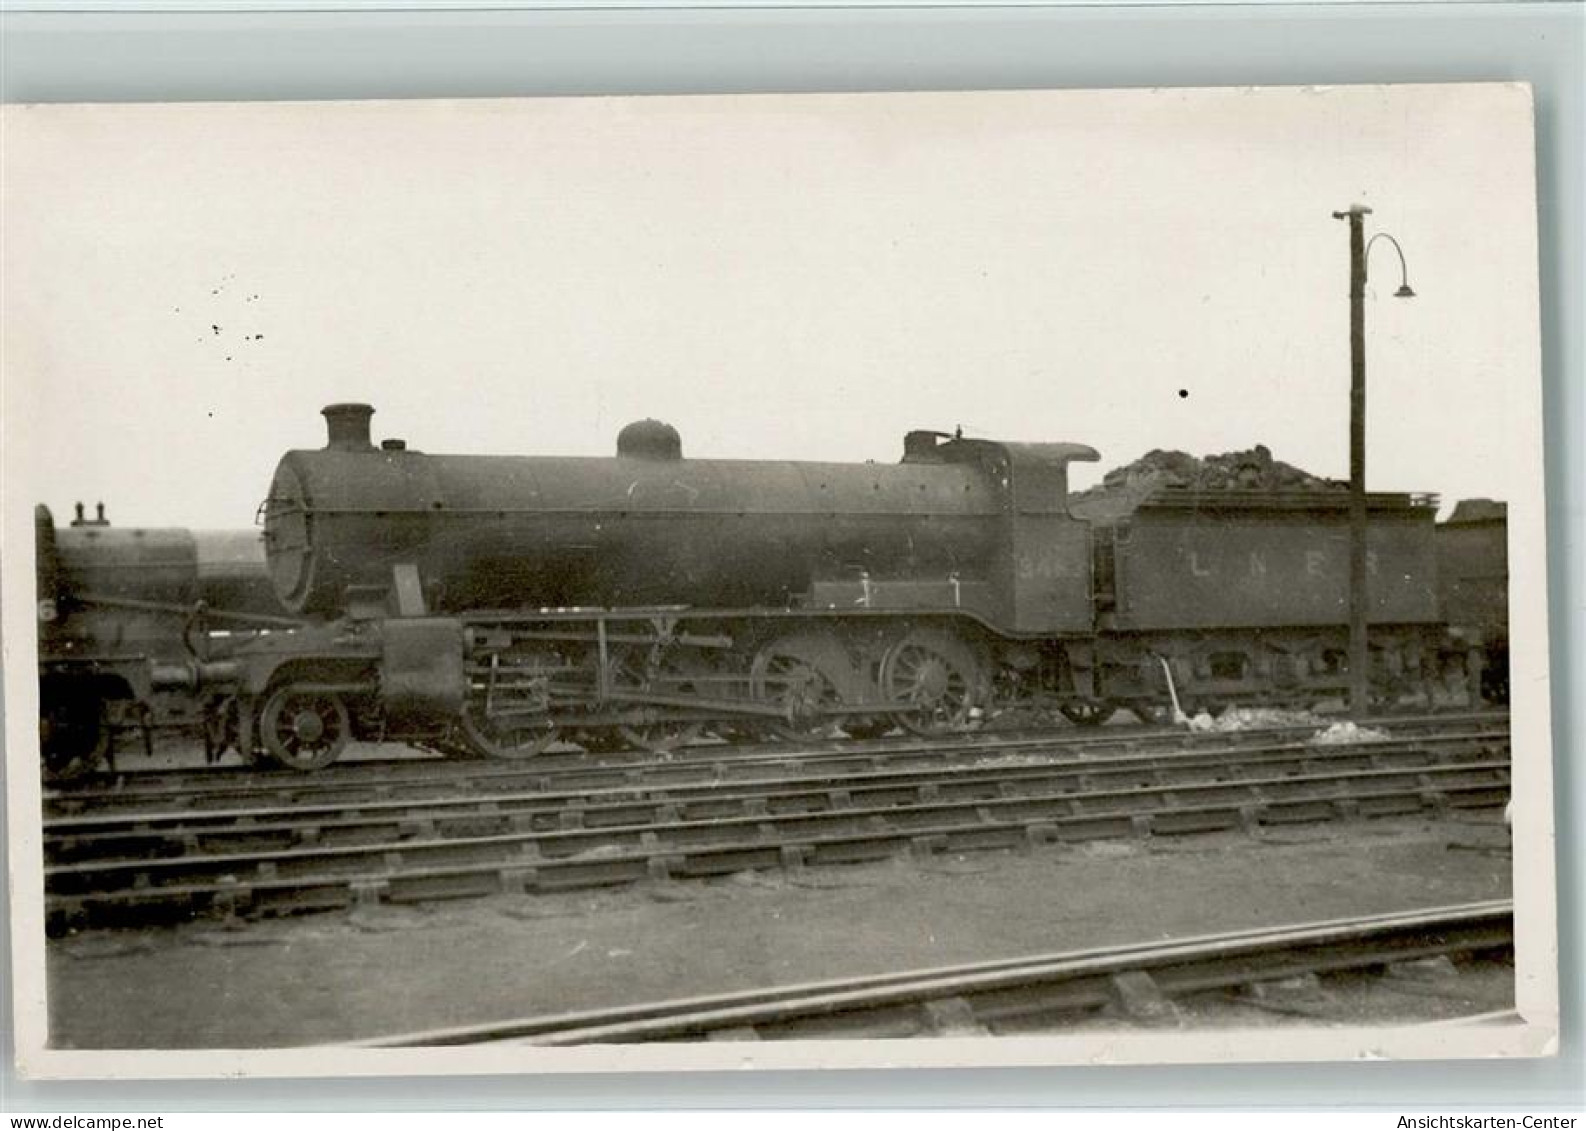 10142209 - Lokomotiven Ausland 3483 - Treinen